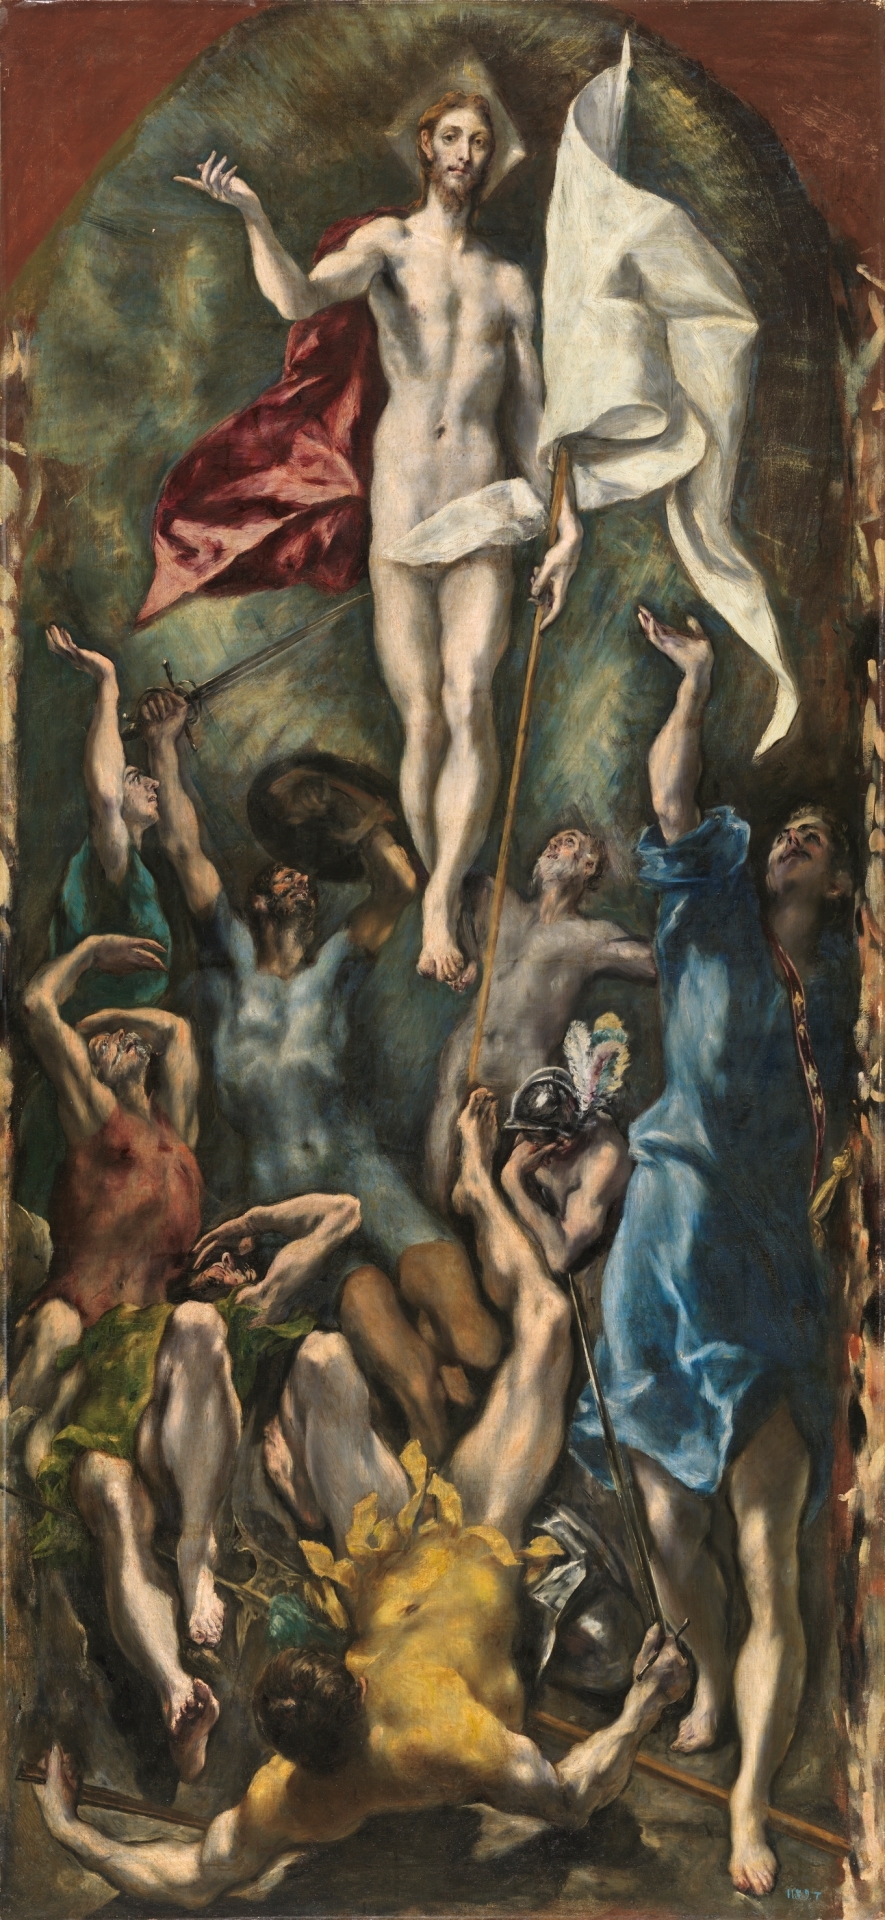 The Resurrection - The Collection - Museo Nacional del Prado